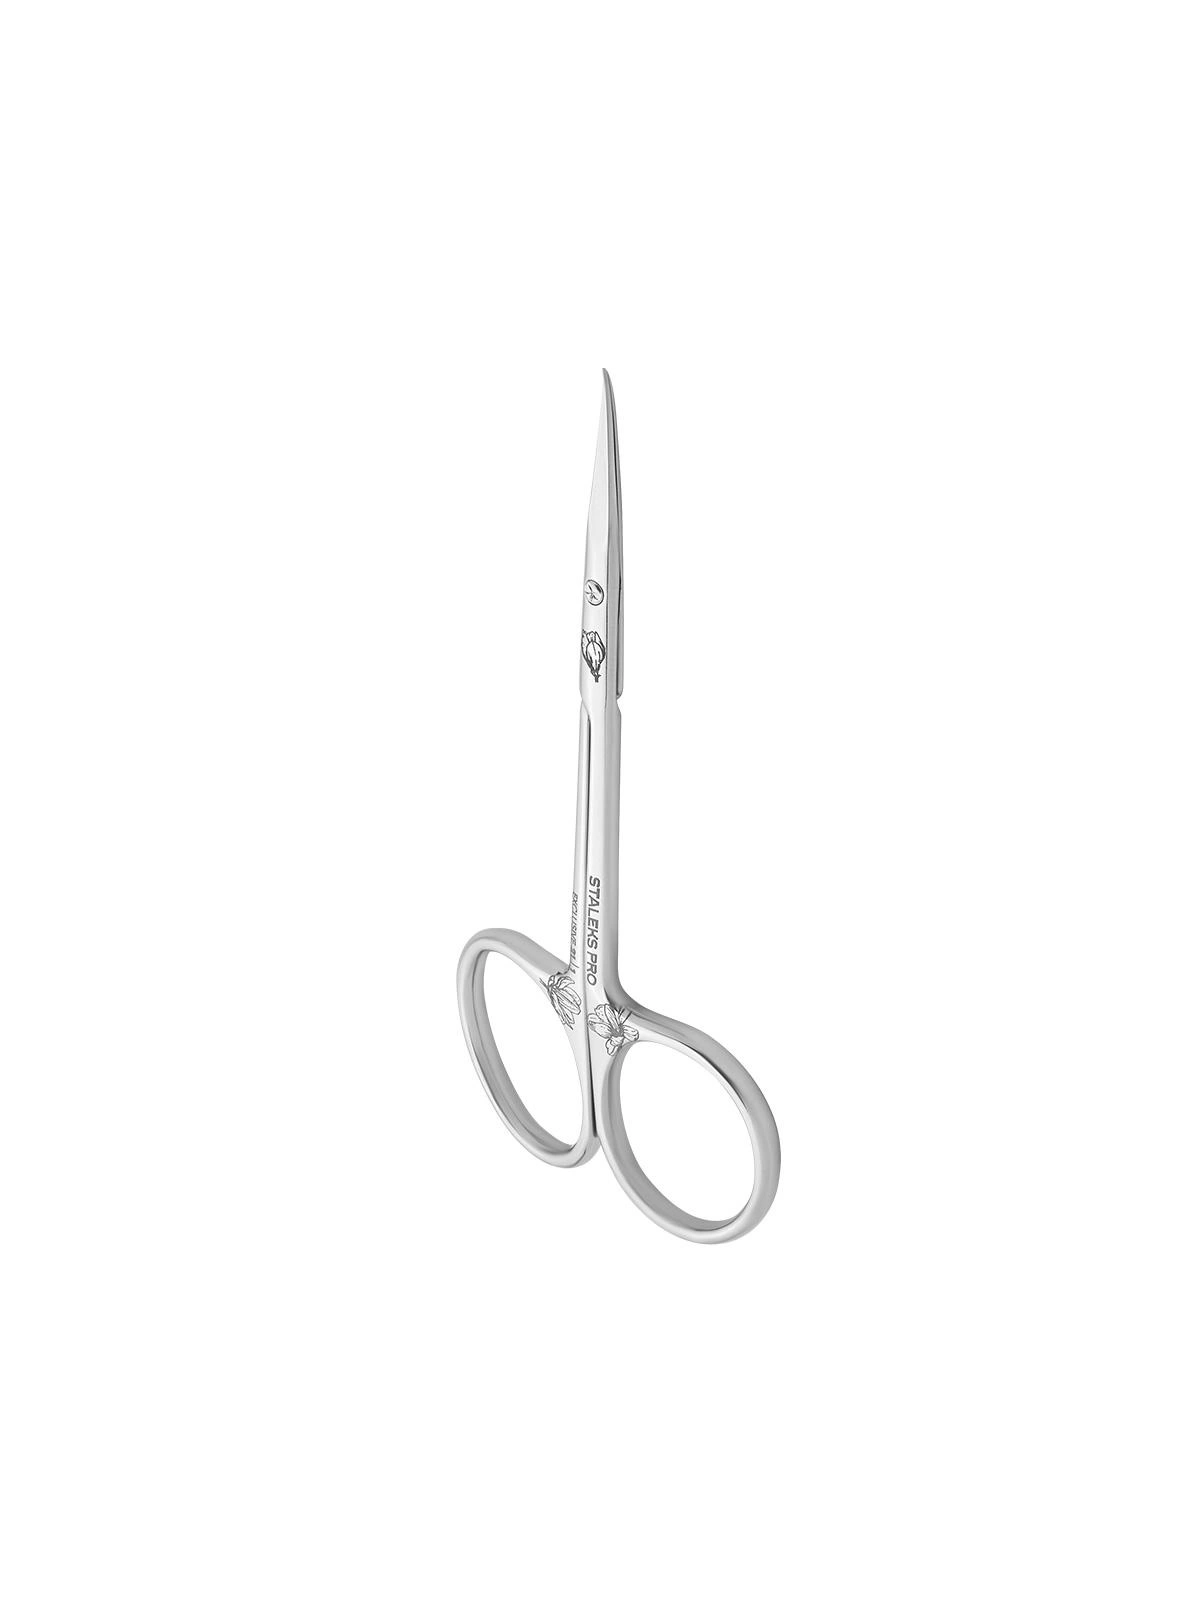 Nożyczki Staleks® SX-21/1 Magnolia